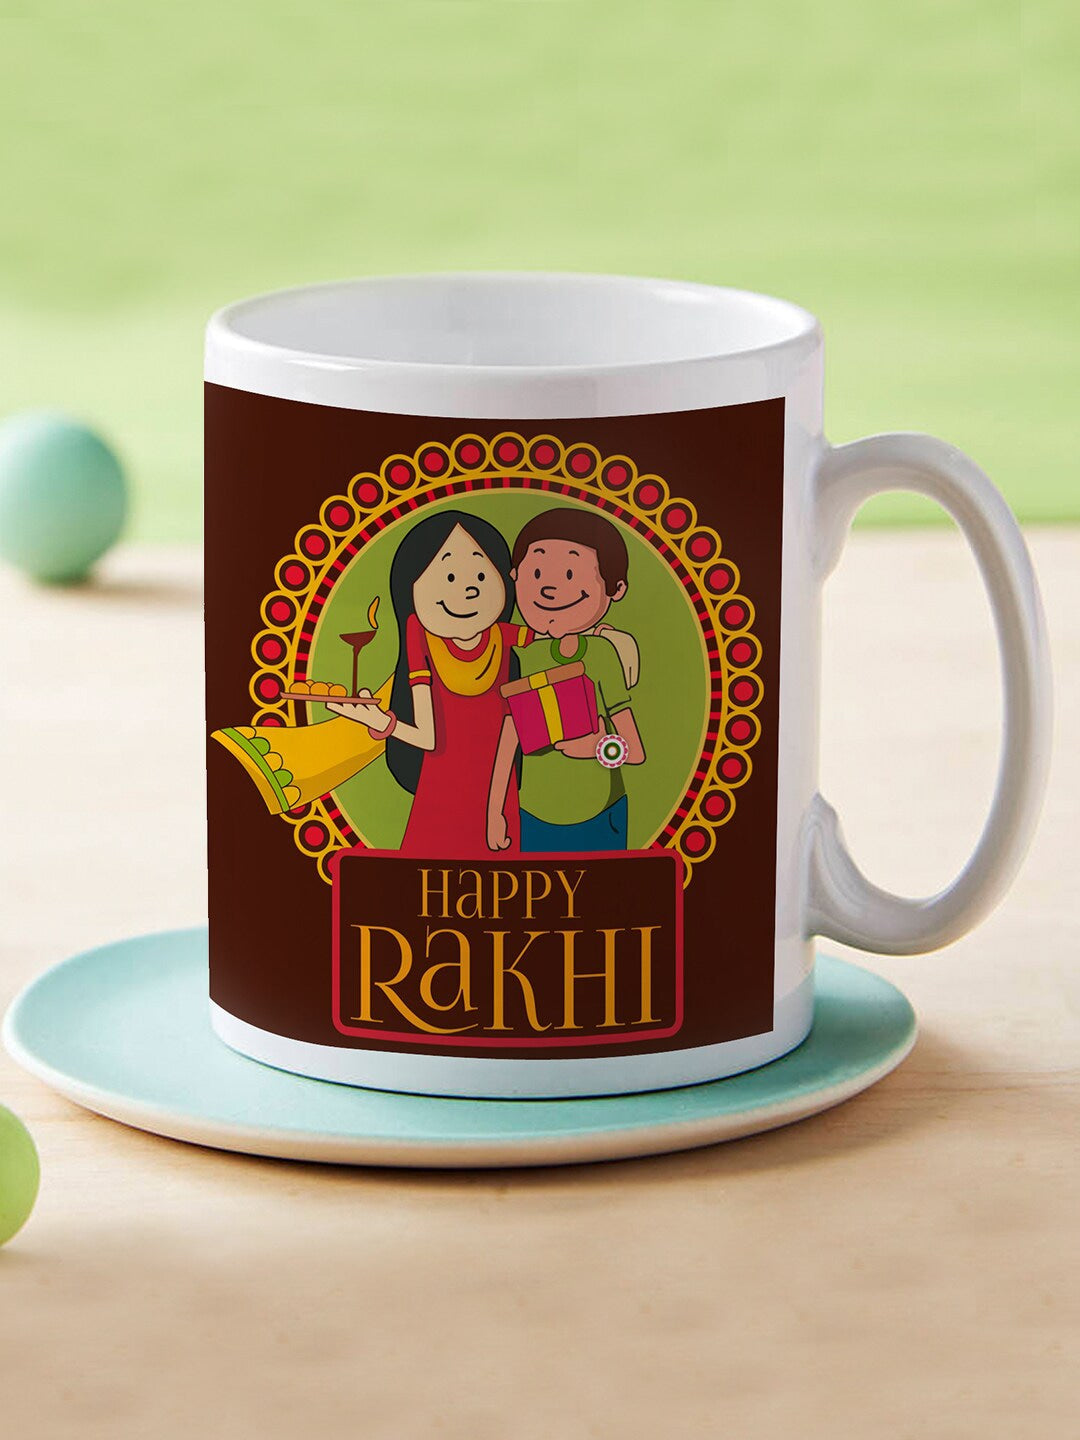 rakhi gift for sister in law The Lovely Gift: Gift for Sister